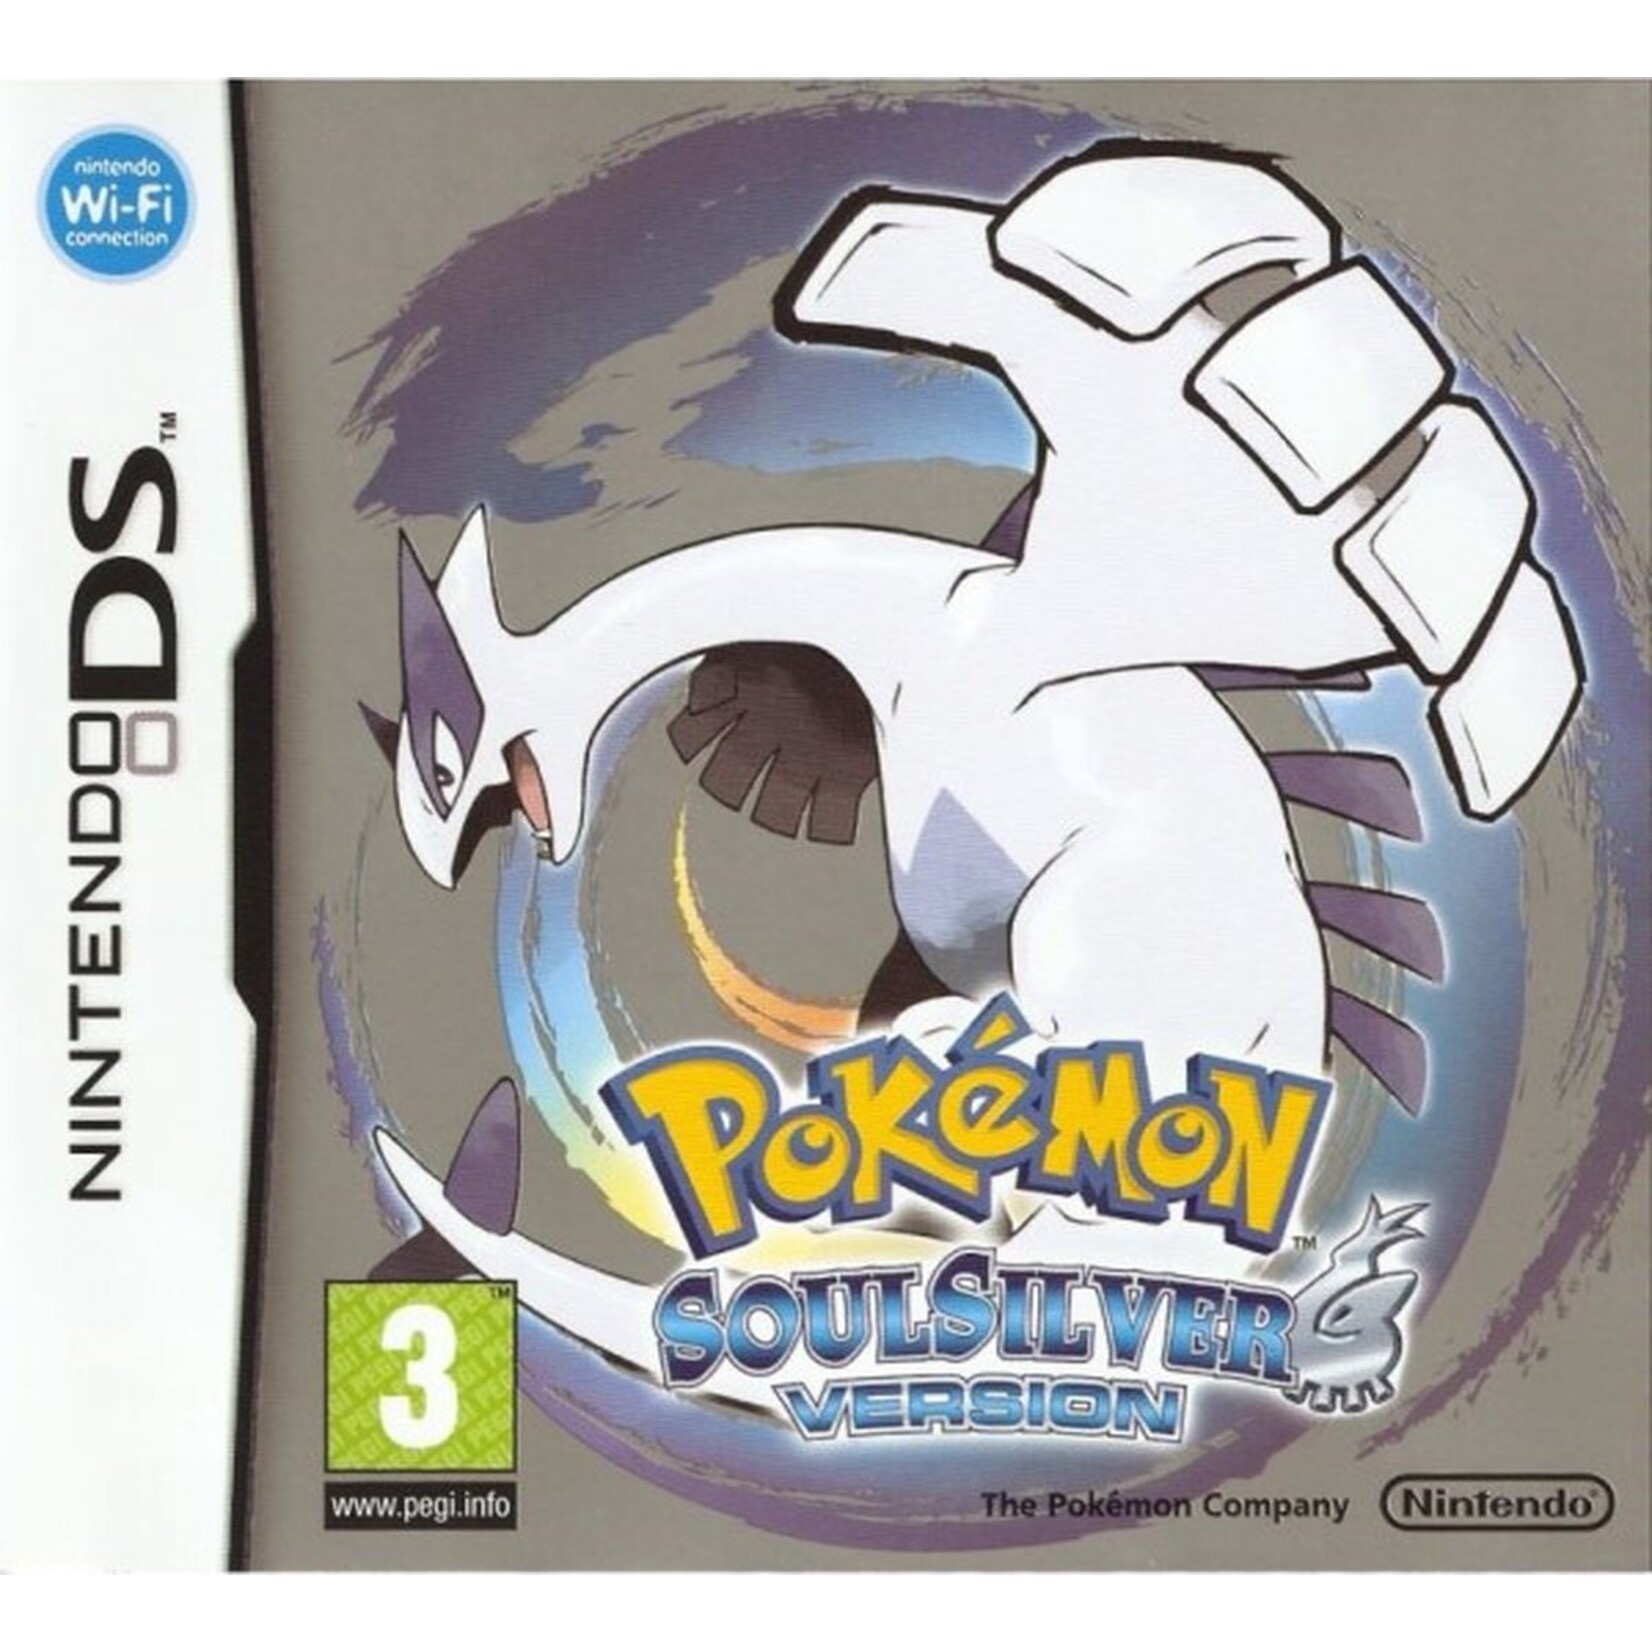 Pokémon Pokemon soulsilver